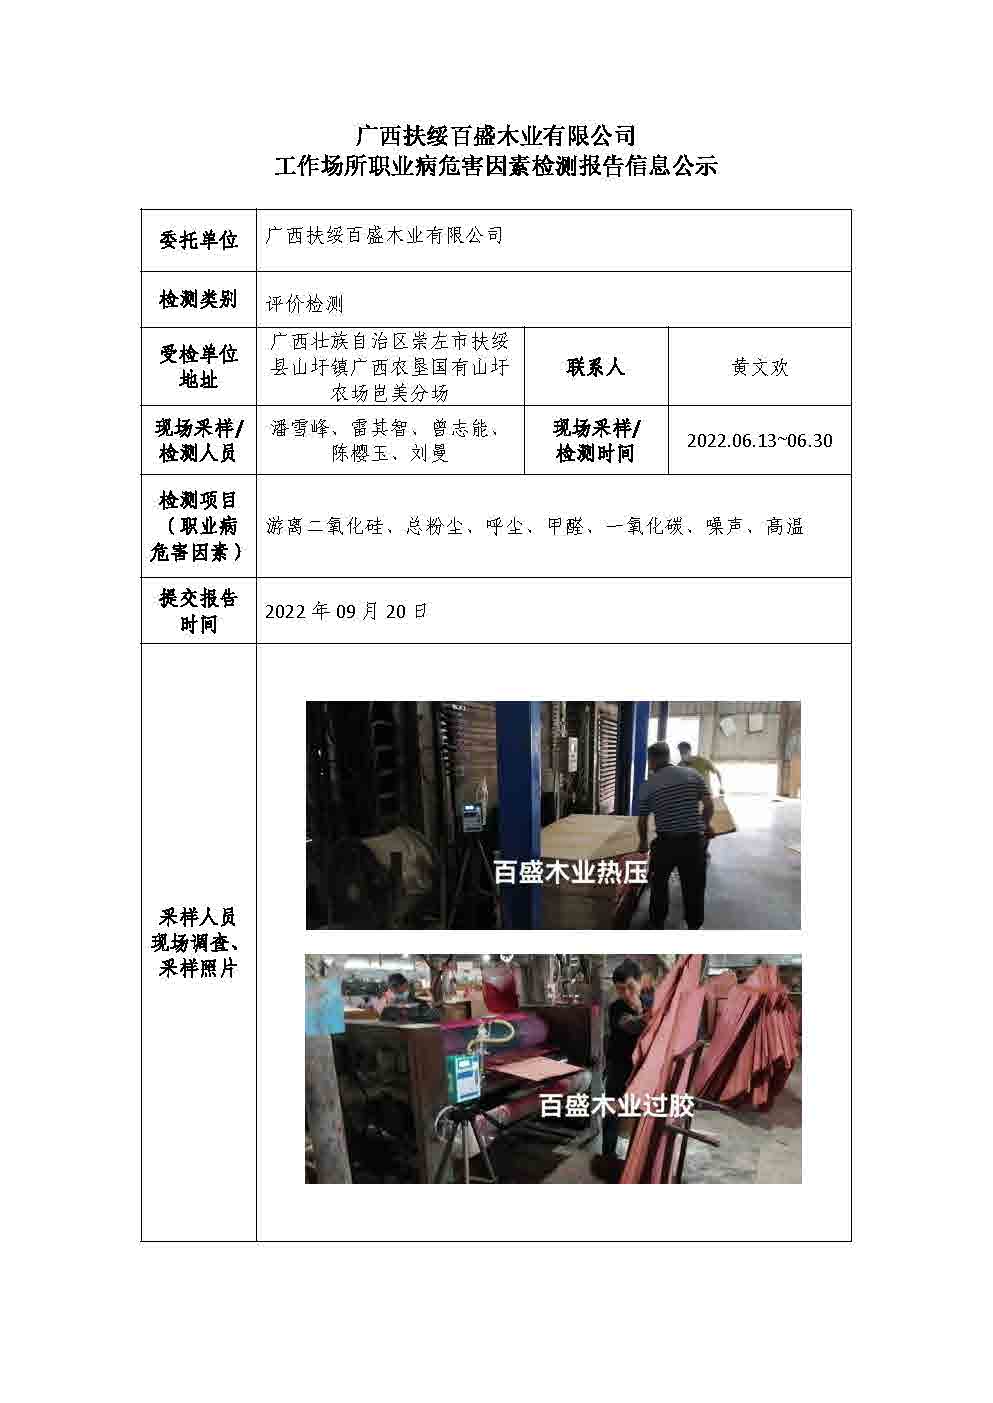 广西扶绥百盛木业有限公司工作场所职业病危害因素检测报告信息公示